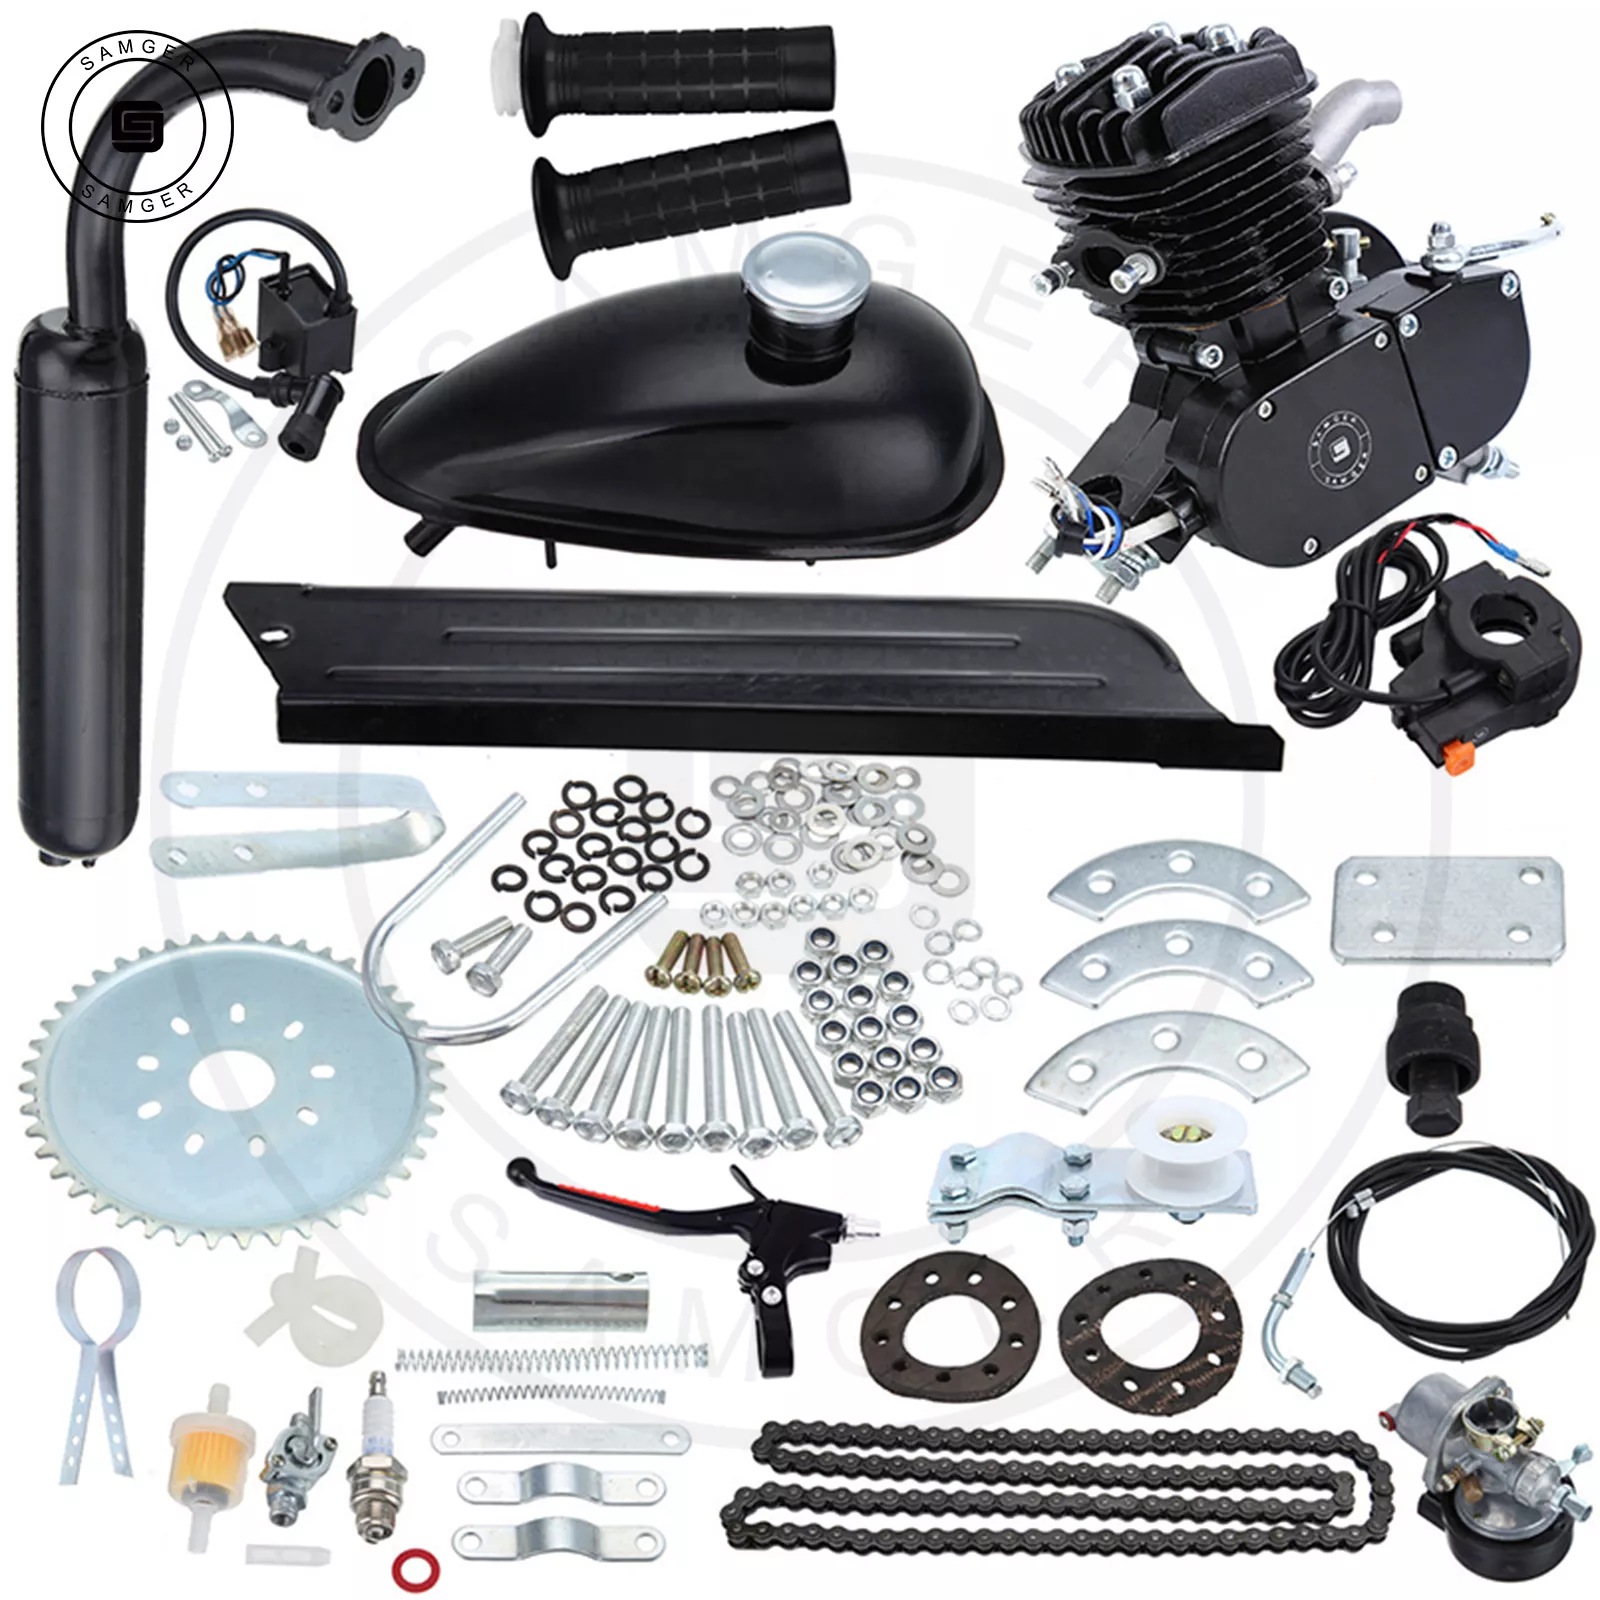 Samger-Kit de Motor de Gas para bicicleta eléctrica, conjunto completo de Motor de 2 tiempos de 50/80cc para bicicleta de montaña, color negro